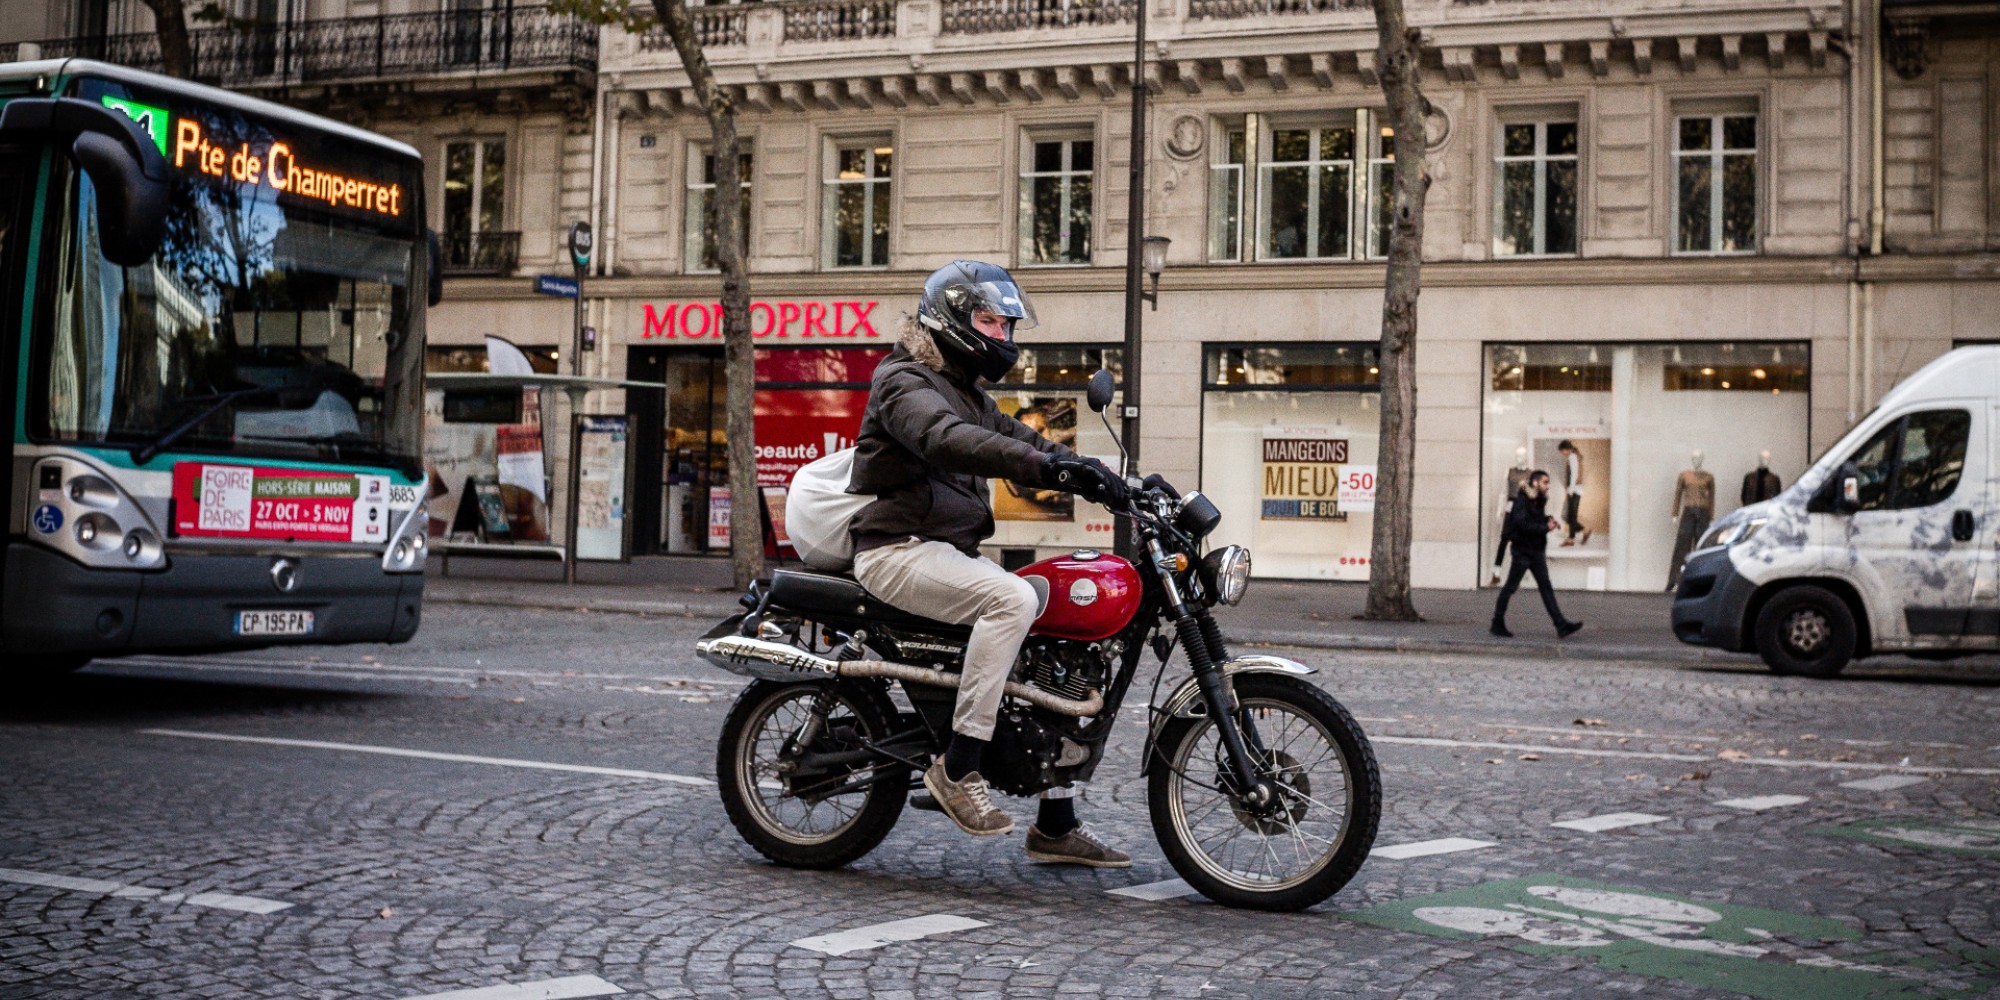 Contrôle technique obligatoire pour les motos et scooters : qu'en pensent les usagers ? - Europe 1